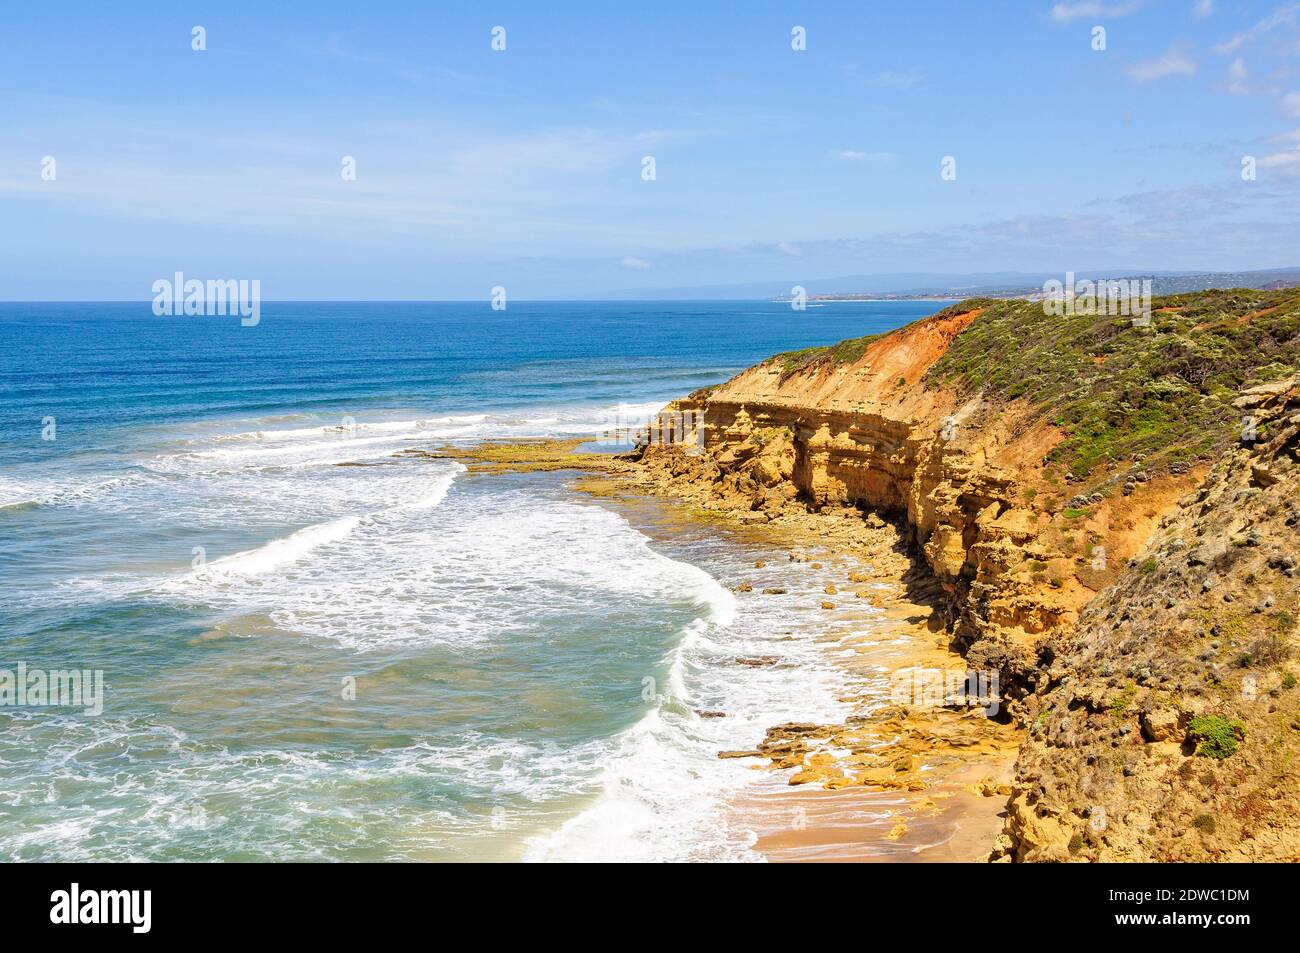 Les falaises de grès de point Addis sont constamment façonnées par les vagues de l'océan Austral - Anglesea, Victoria, Australie Banque D'Images